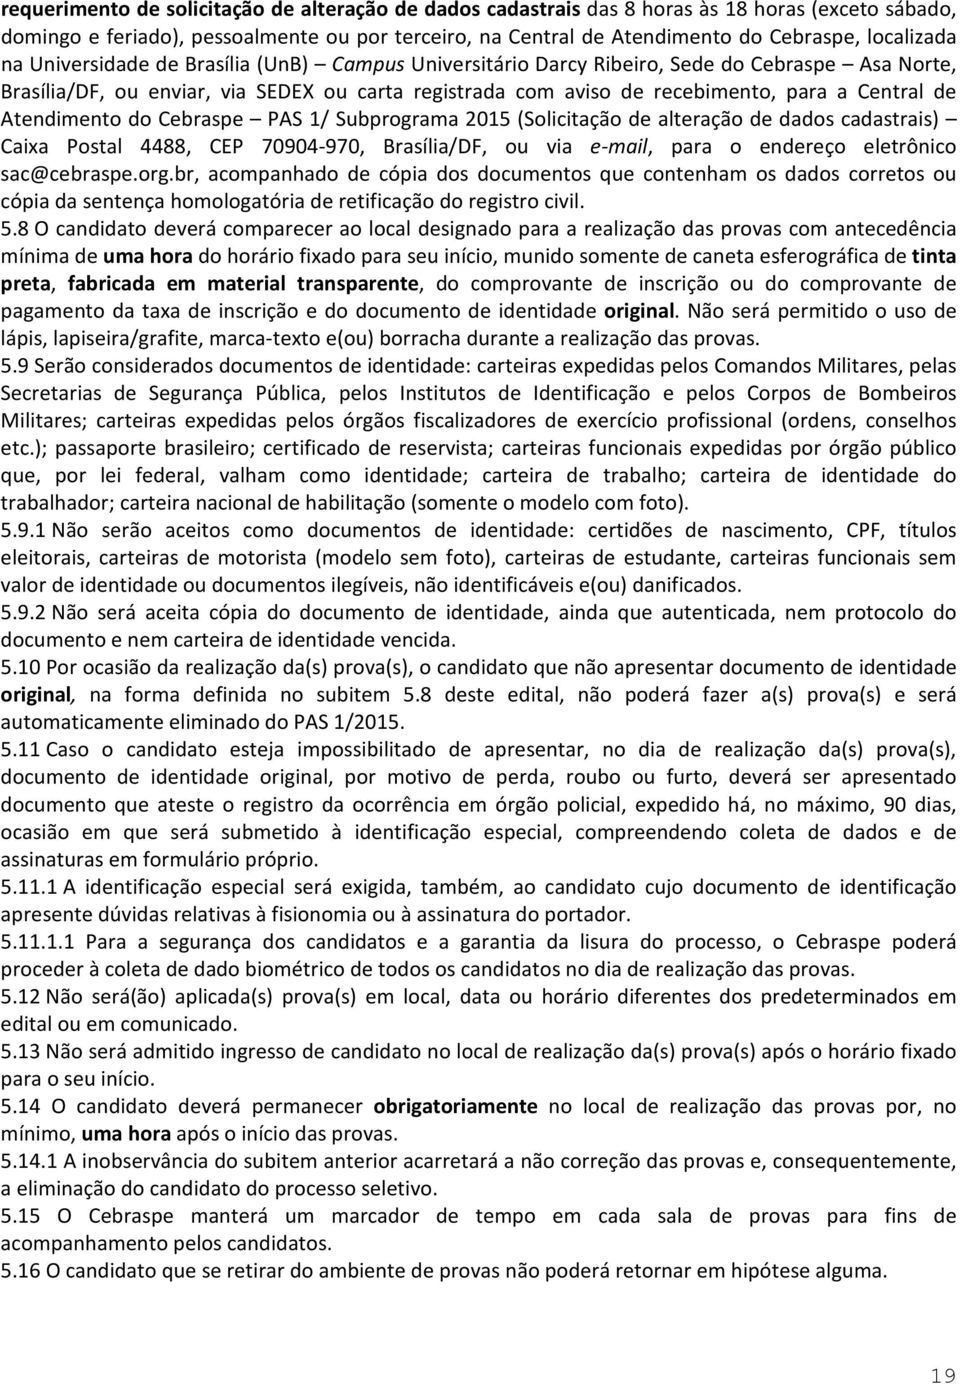 Central de Atendimento do Cebraspe PAS 1/ Subprograma 2015 (Solicitação de alteração de dados cadastrais) Caixa Postal 4488, CEP 70904-970, Brasília/DF, ou via e-mail, para o endereço eletrônico